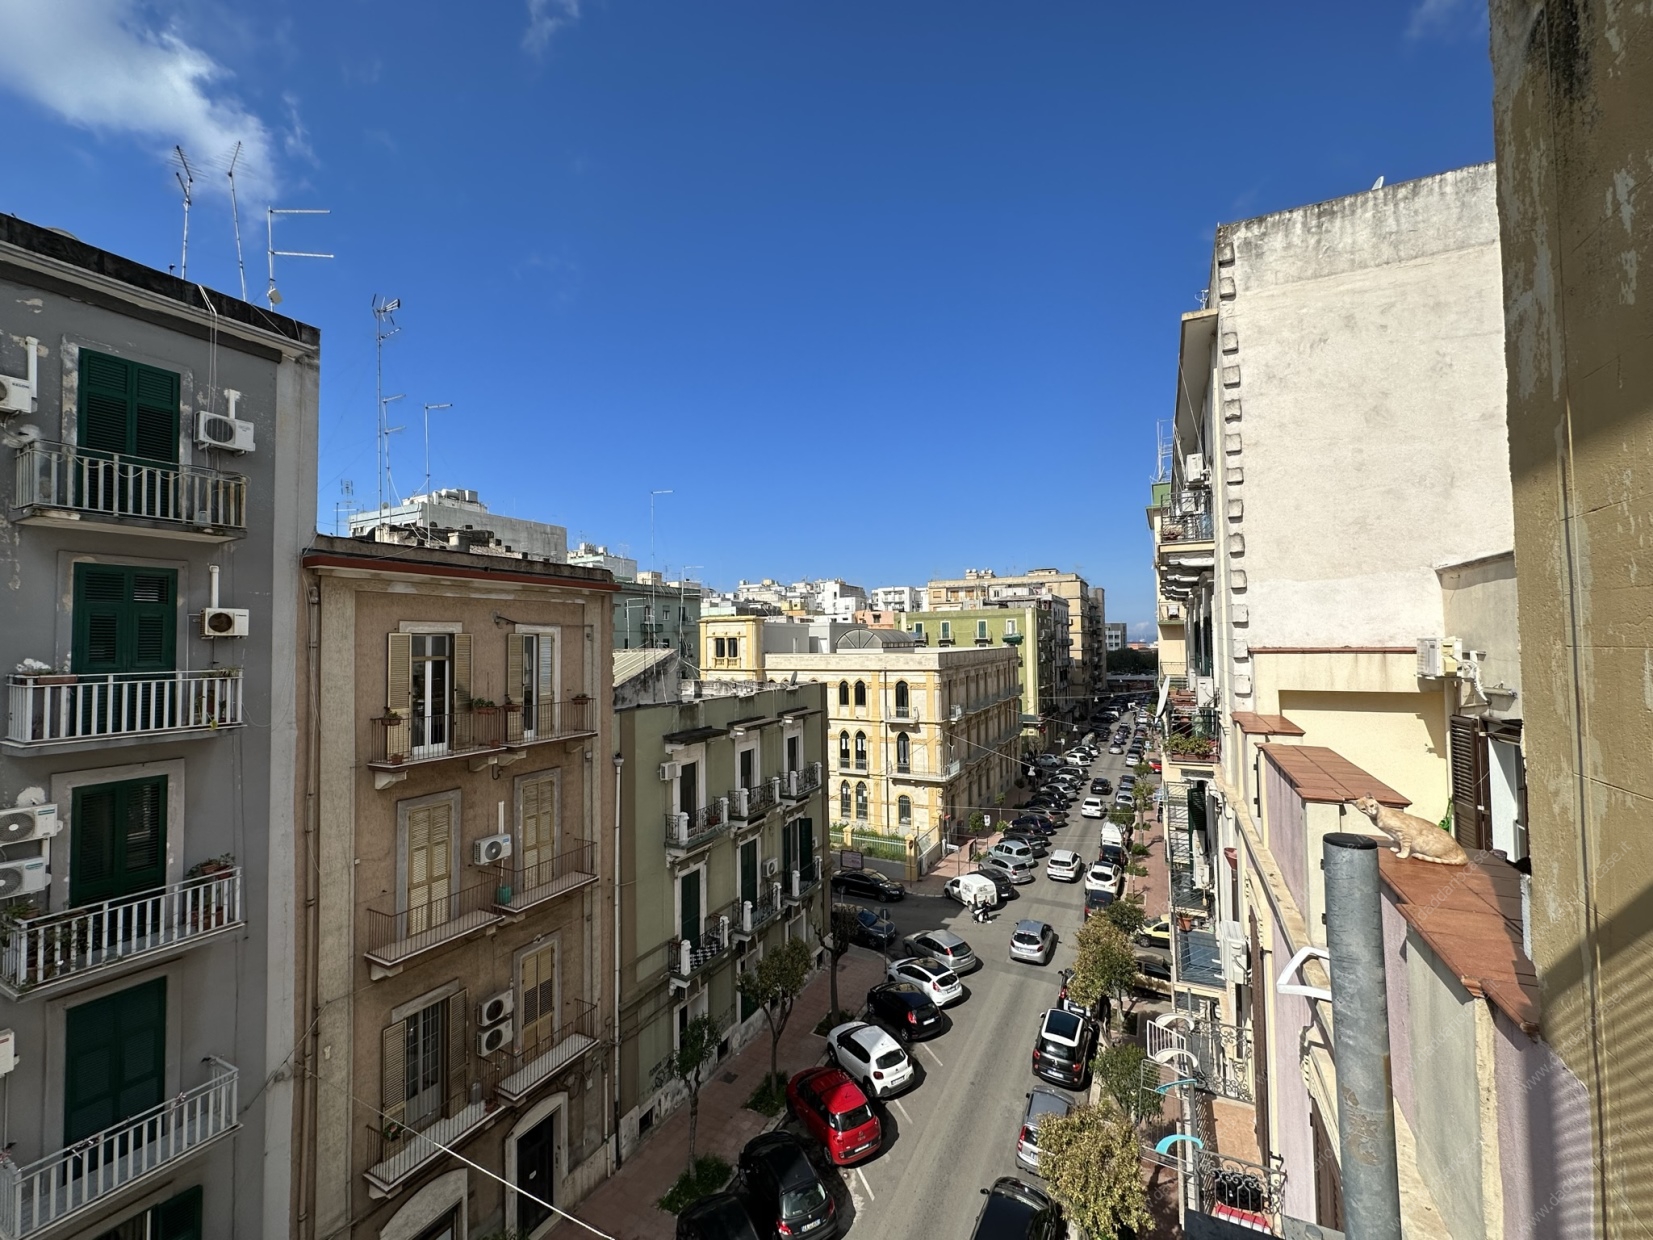 Appartamento in vendita a Taranto, 3 locali, prezzo € 25.000 | PortaleAgenzieImmobiliari.it